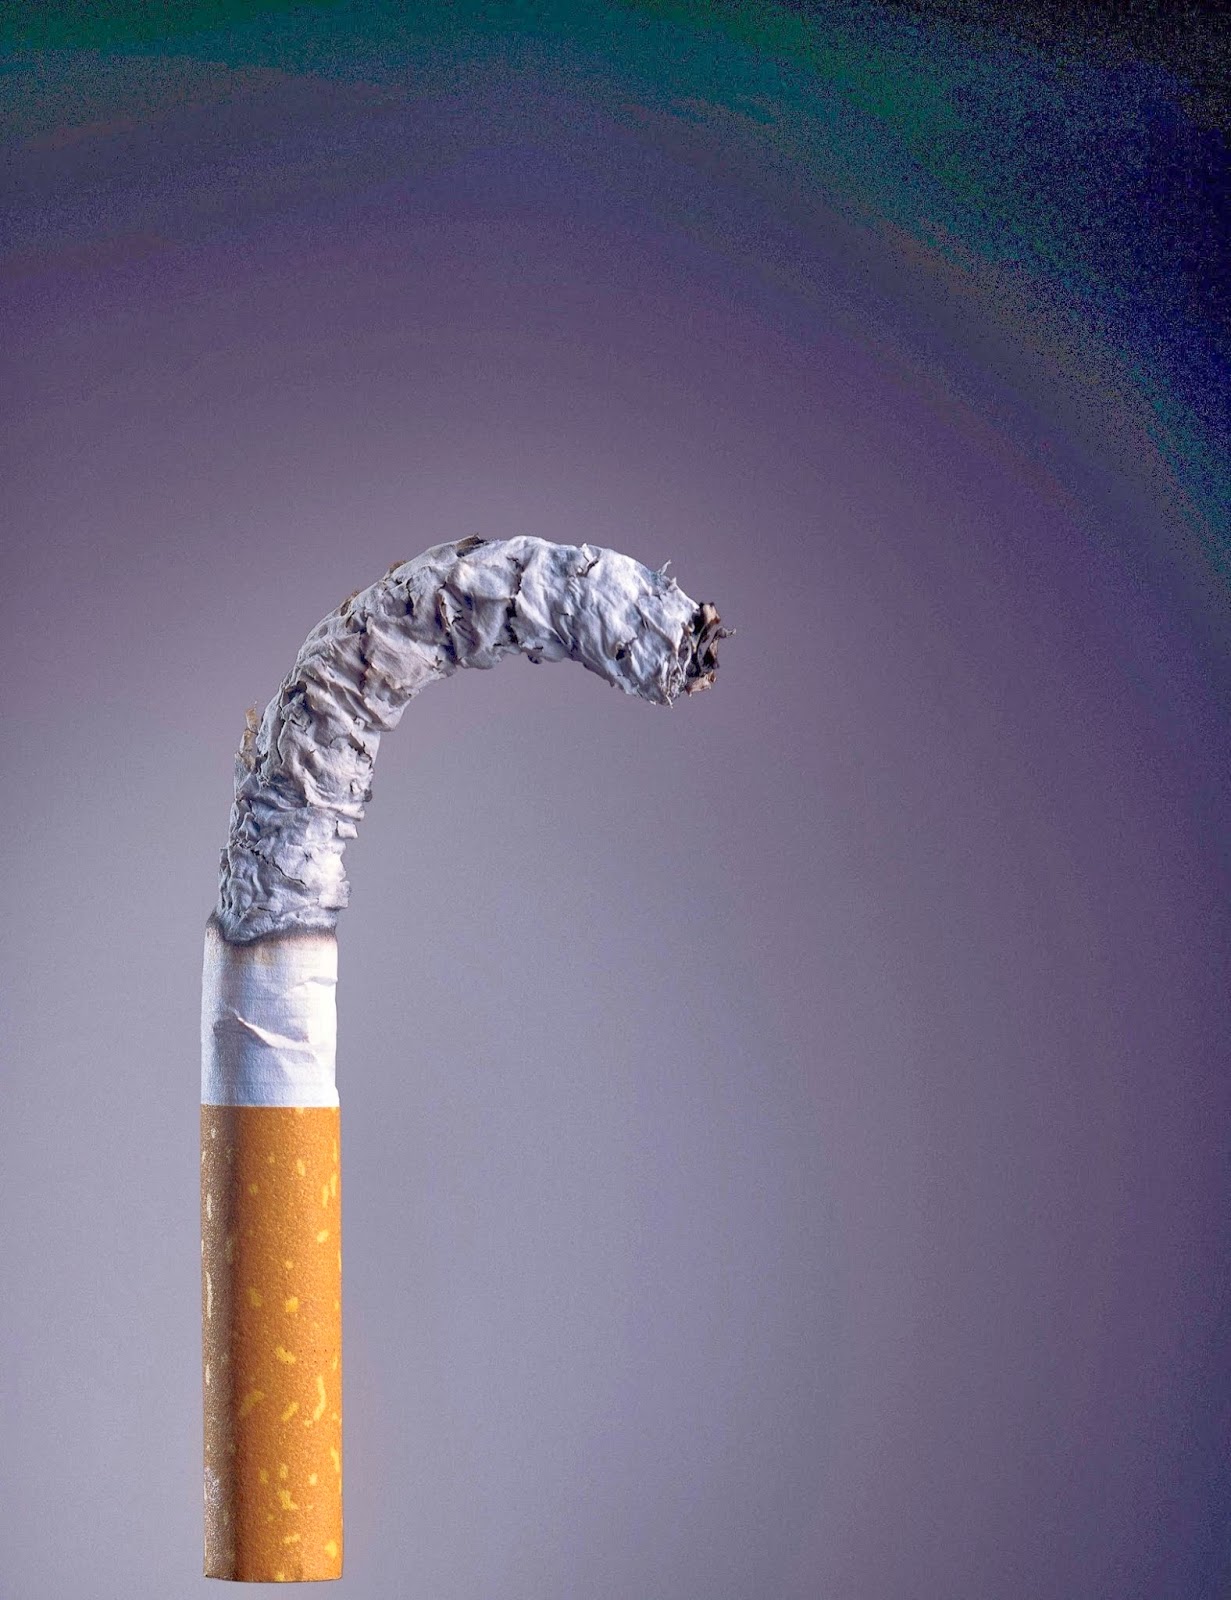 O Ministério da Saúde adverte: FUMAR CAUSA IMPOTÊNCIA SEXUAL.